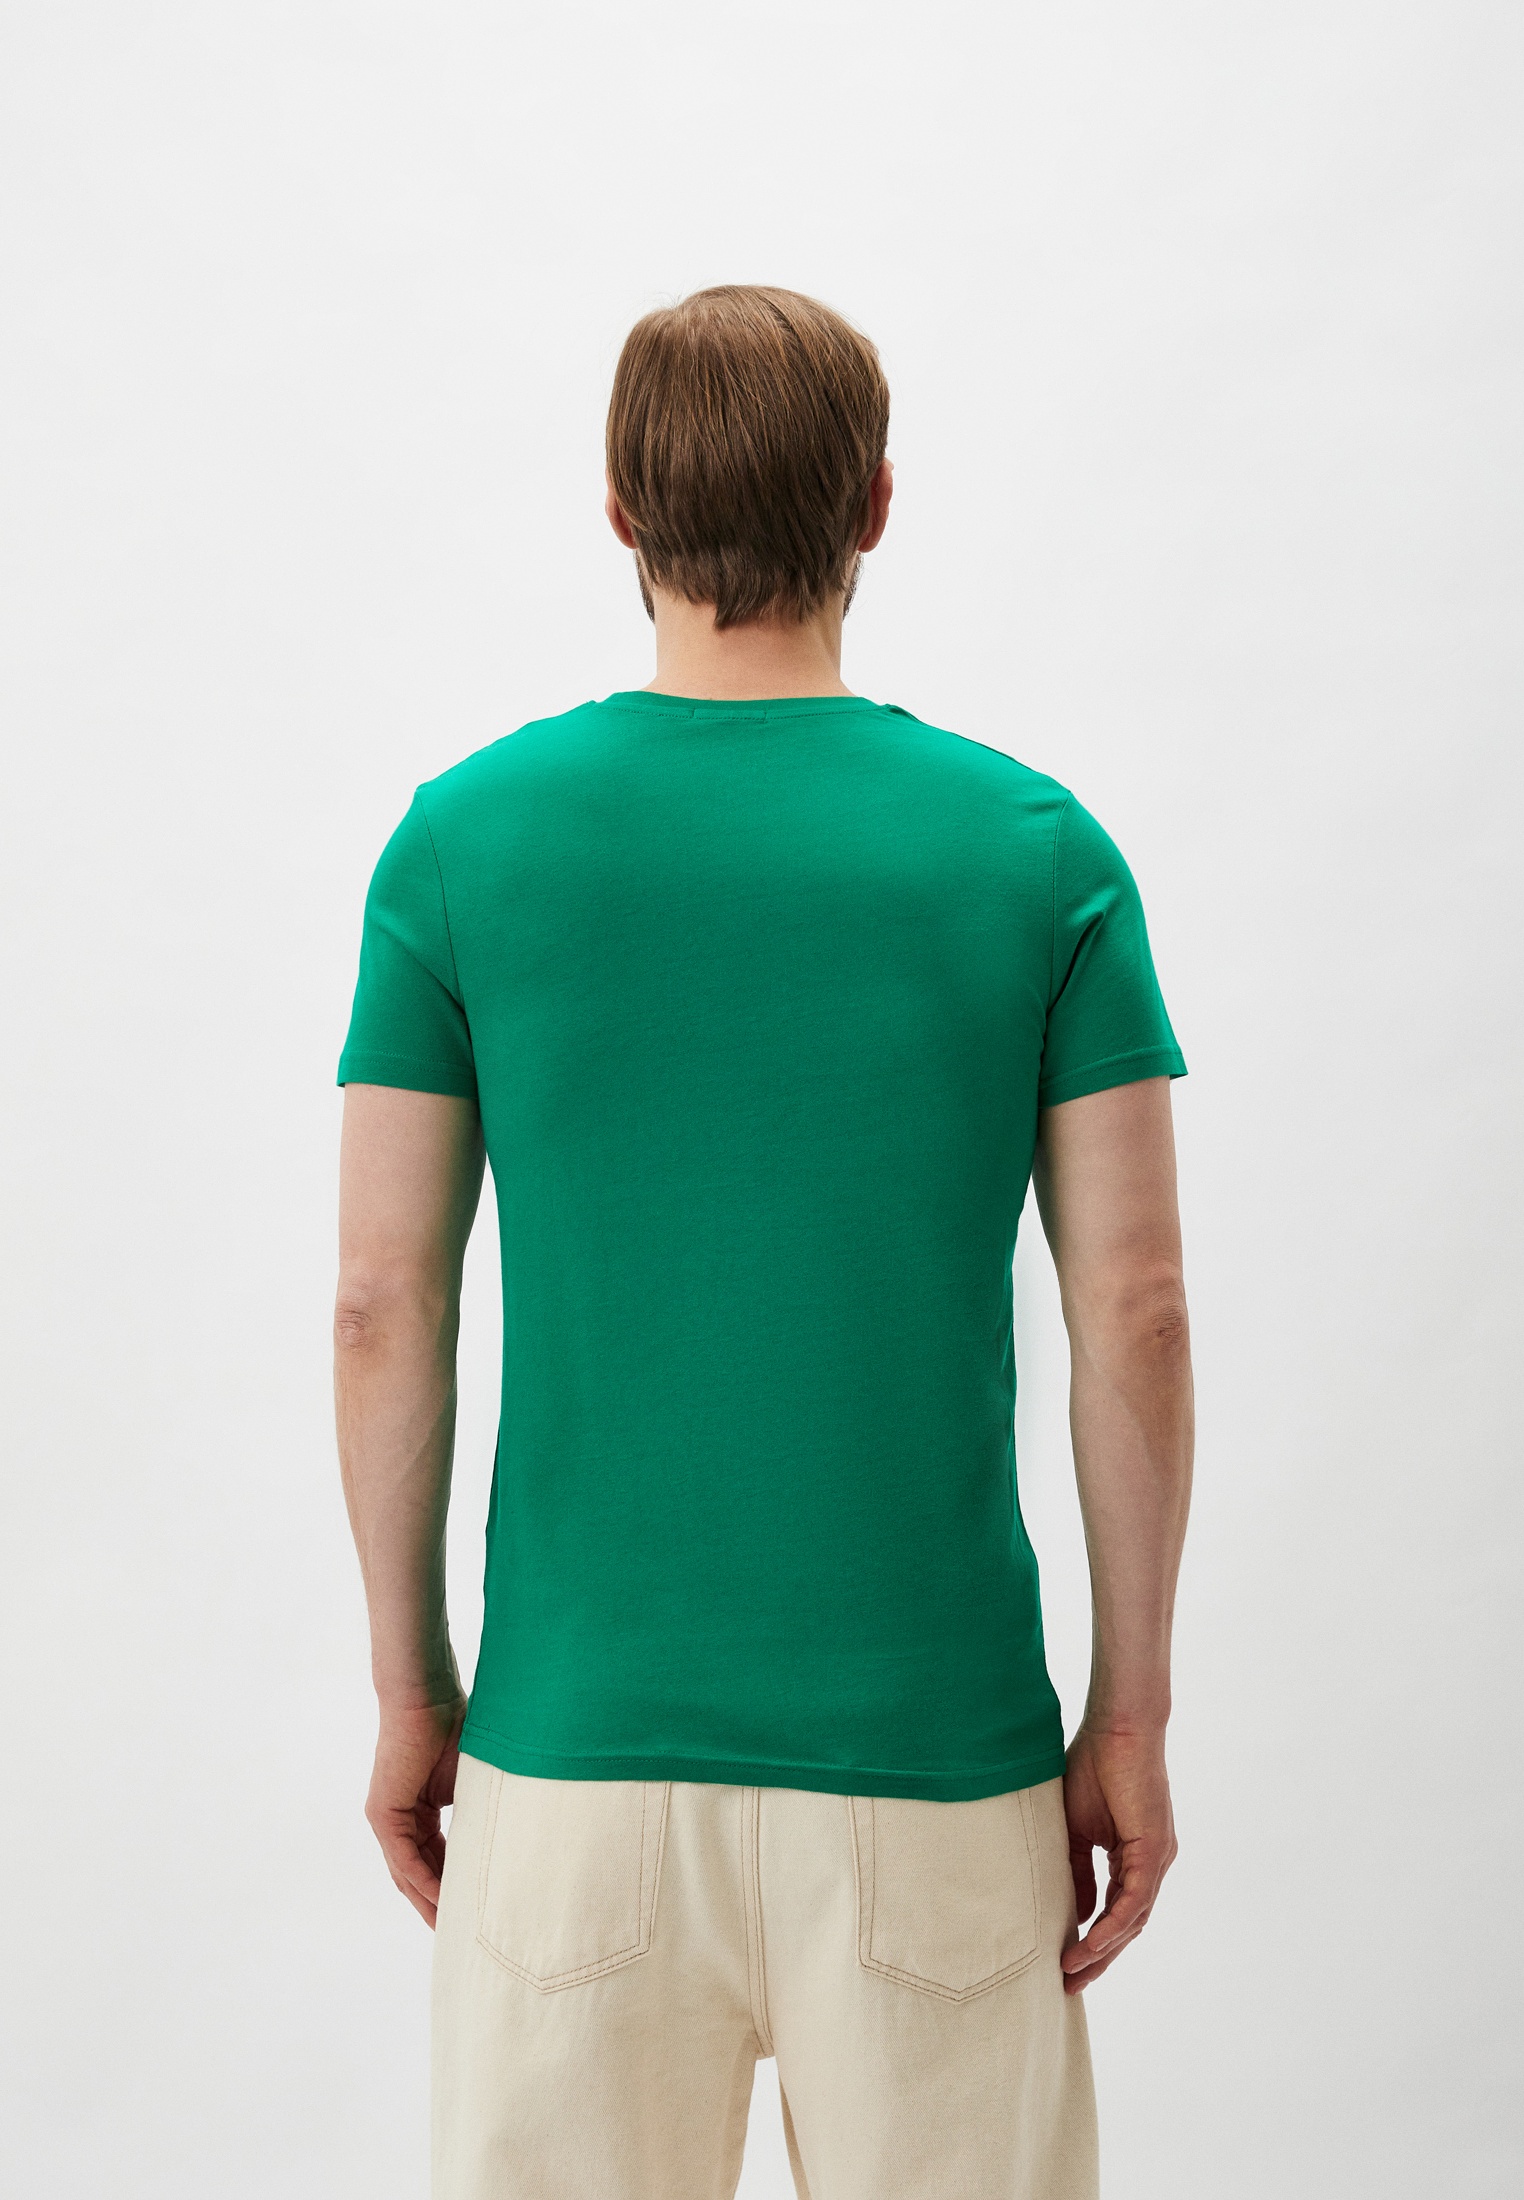 Мужская футболка Baldinini (Балдинини) B-OLM-M004: изображение 3